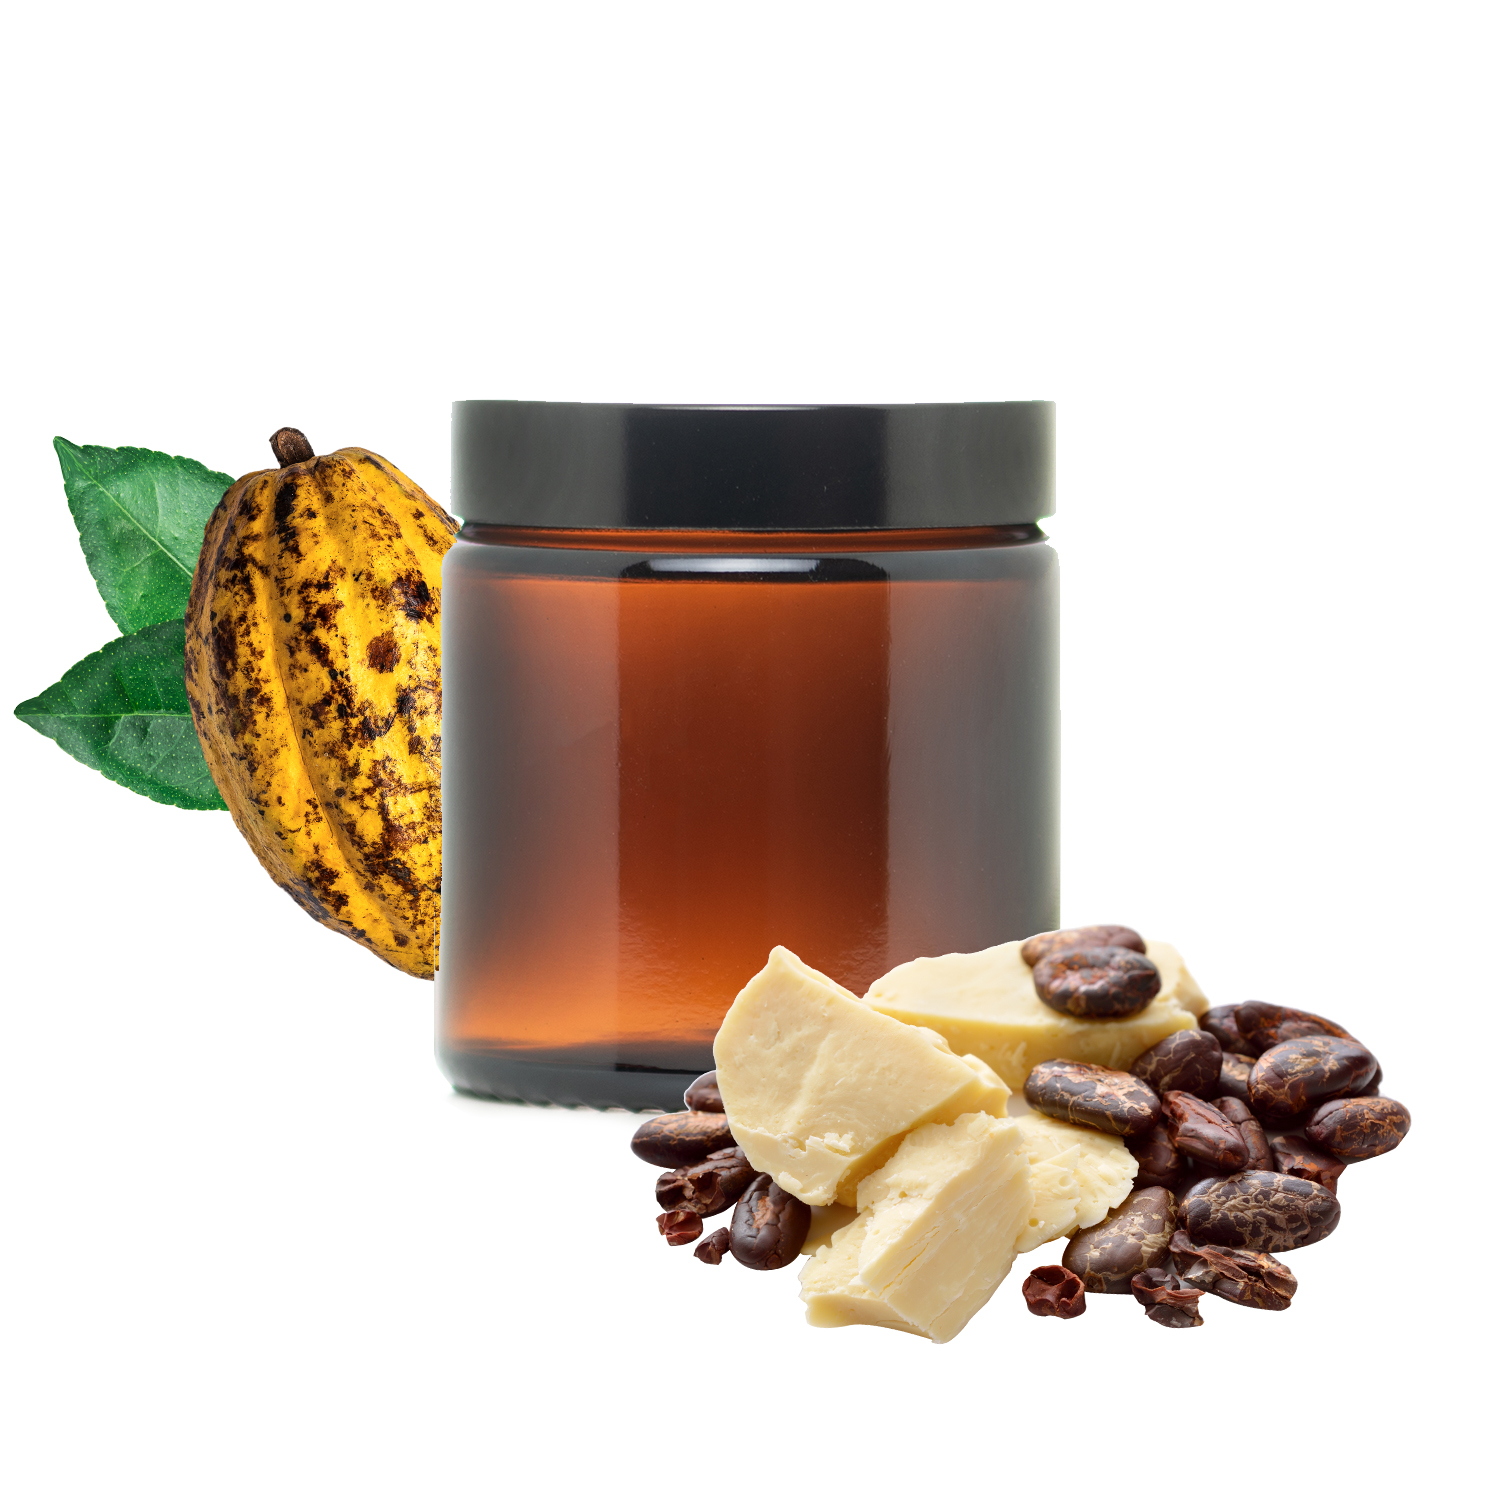 Les vertus cosmétiques du beurre de Cacao + recette - Je fabrique